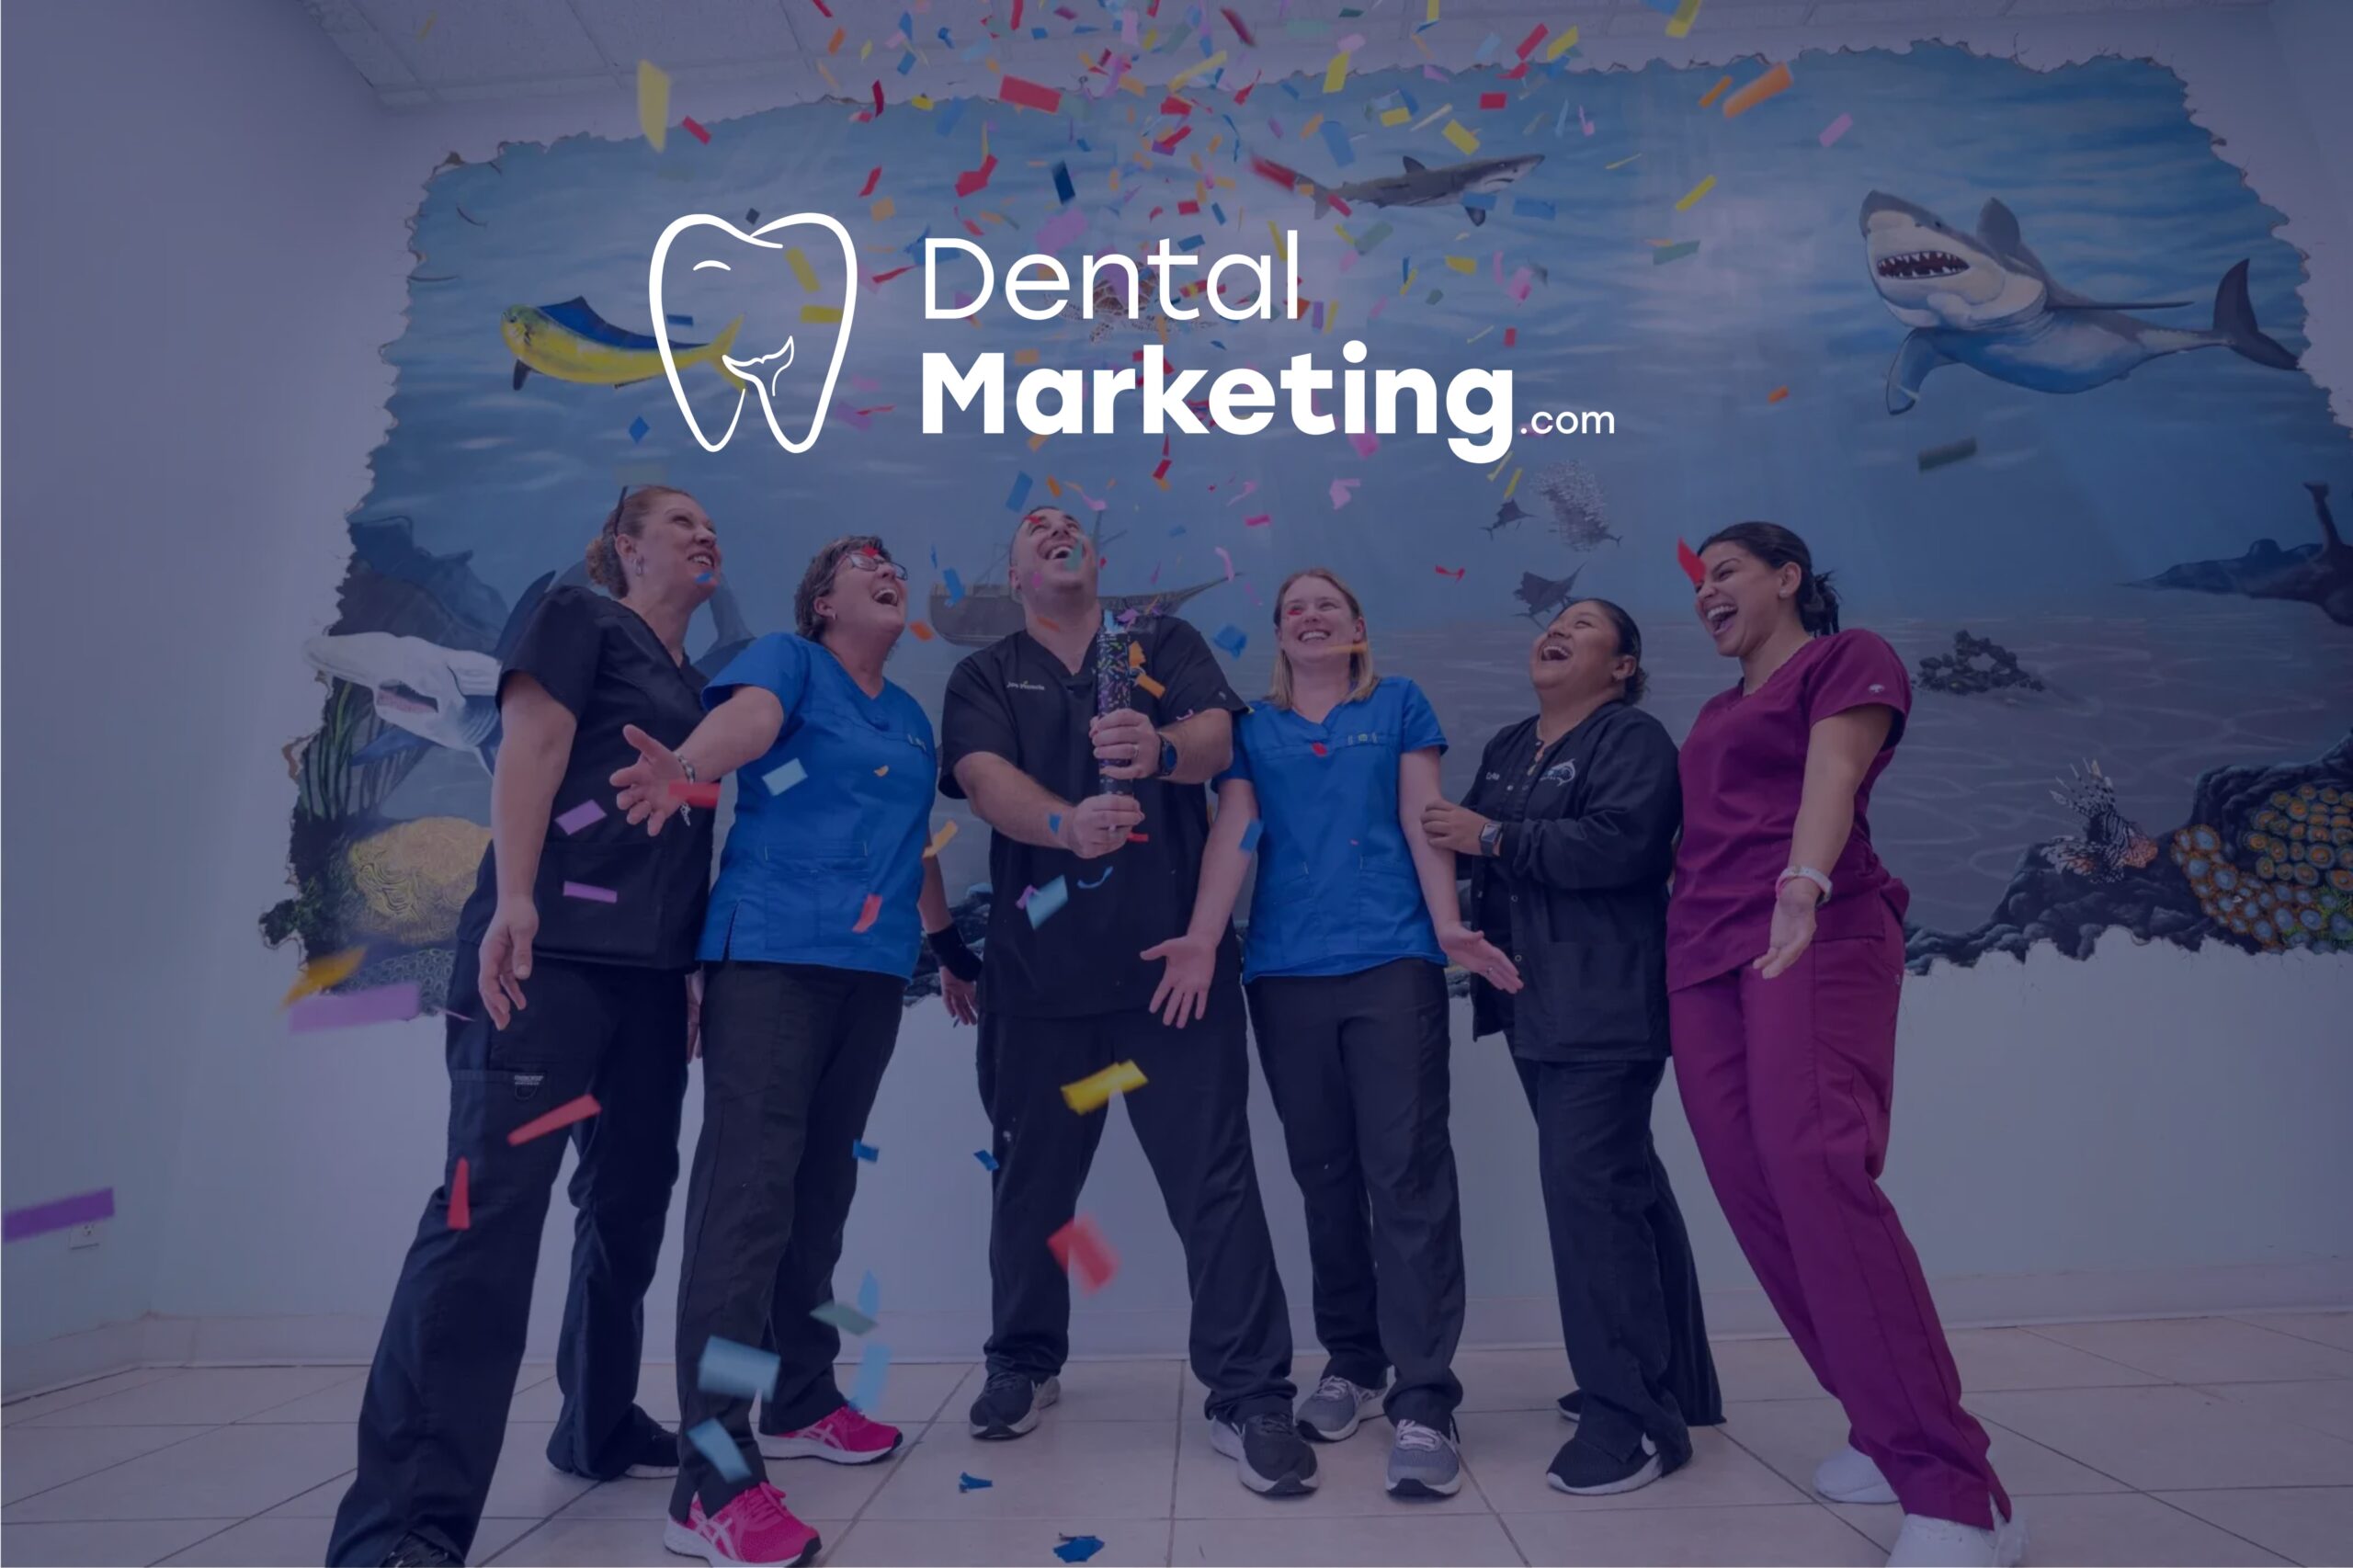 DentalMarketing.com anuncia expansión para servir a las prácticas dentales en América Latina